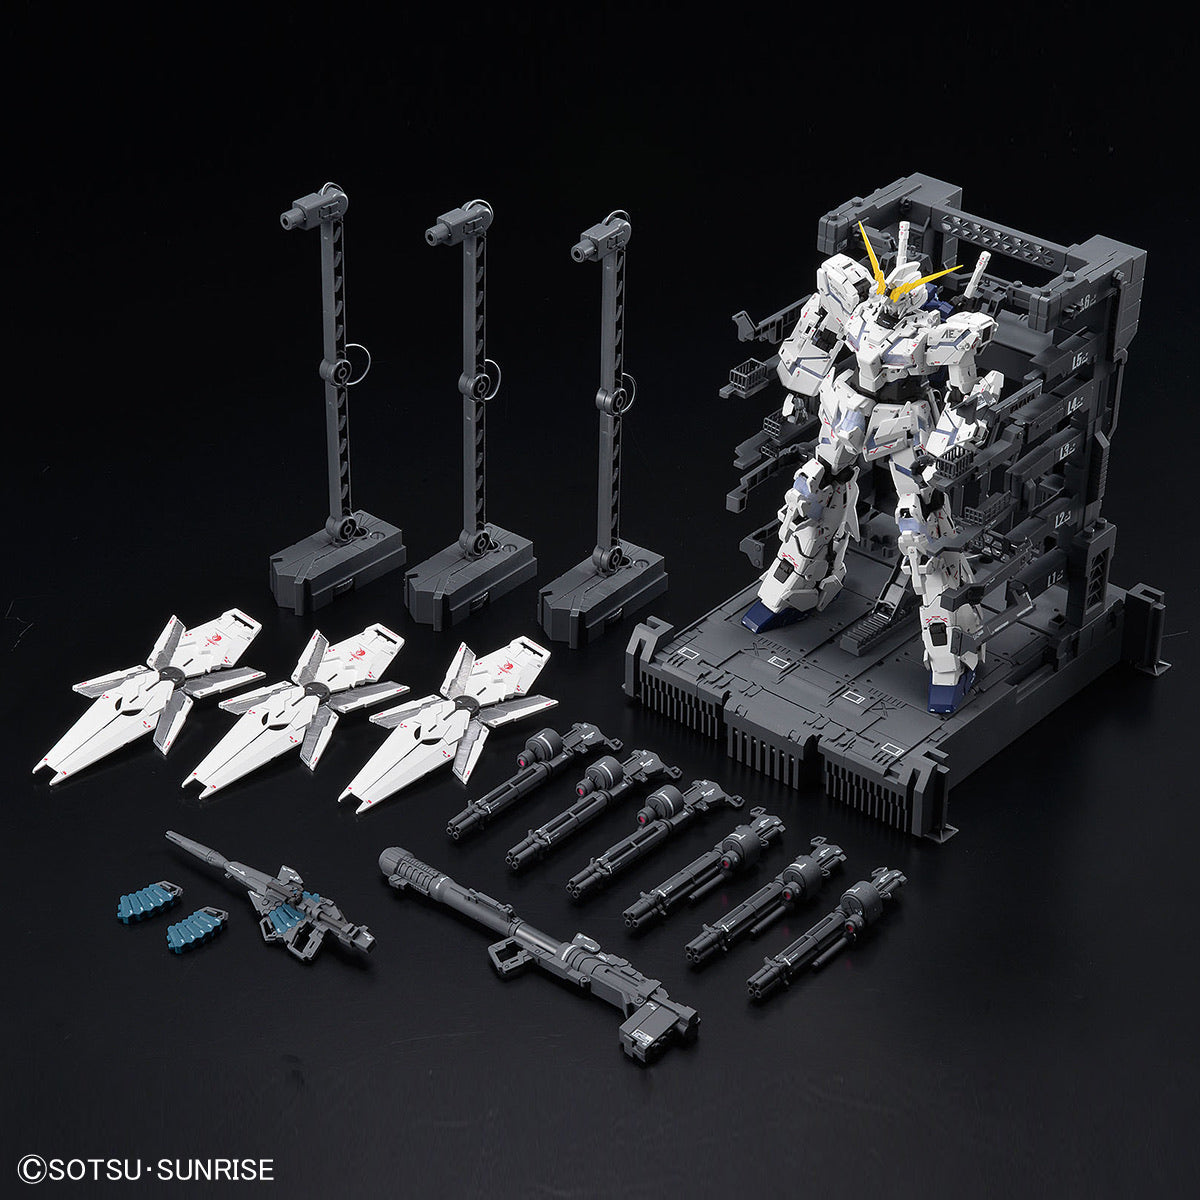 Gundam Base Limited MG-EX 1/100 RX-0 Unicorn Gundam Ver. TWC